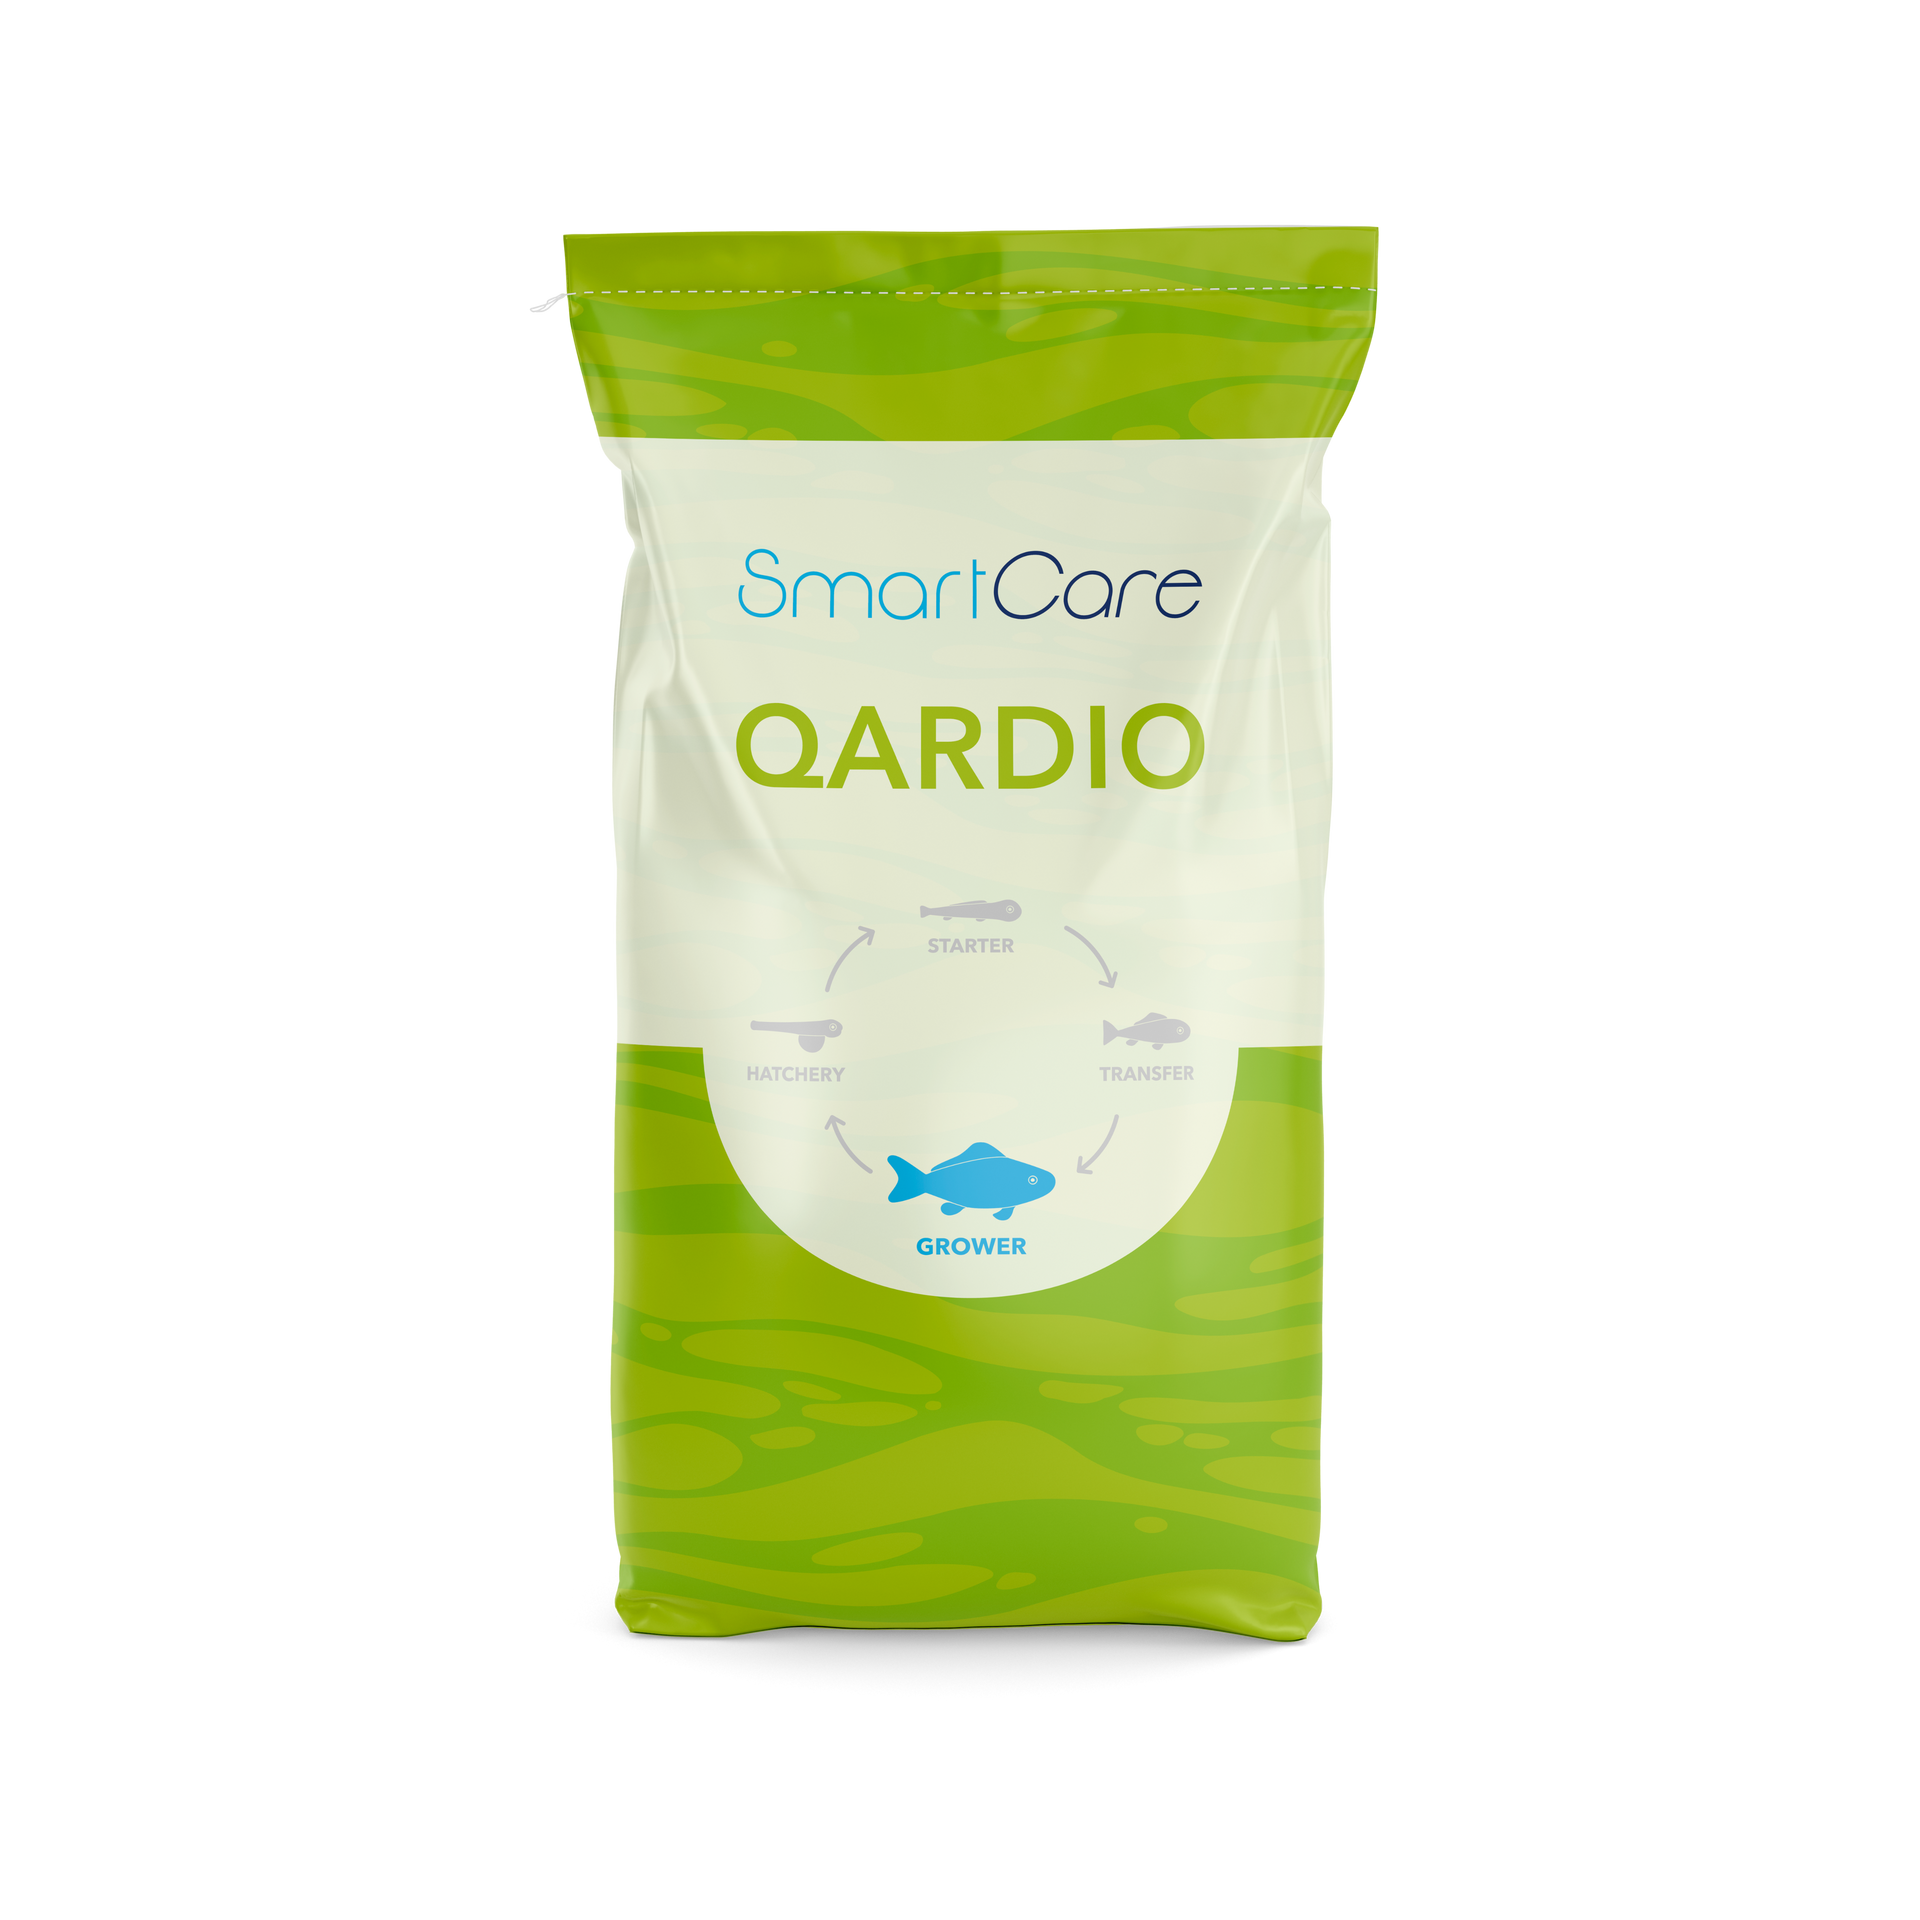 SmartCare Control Qardio health feed for salmon